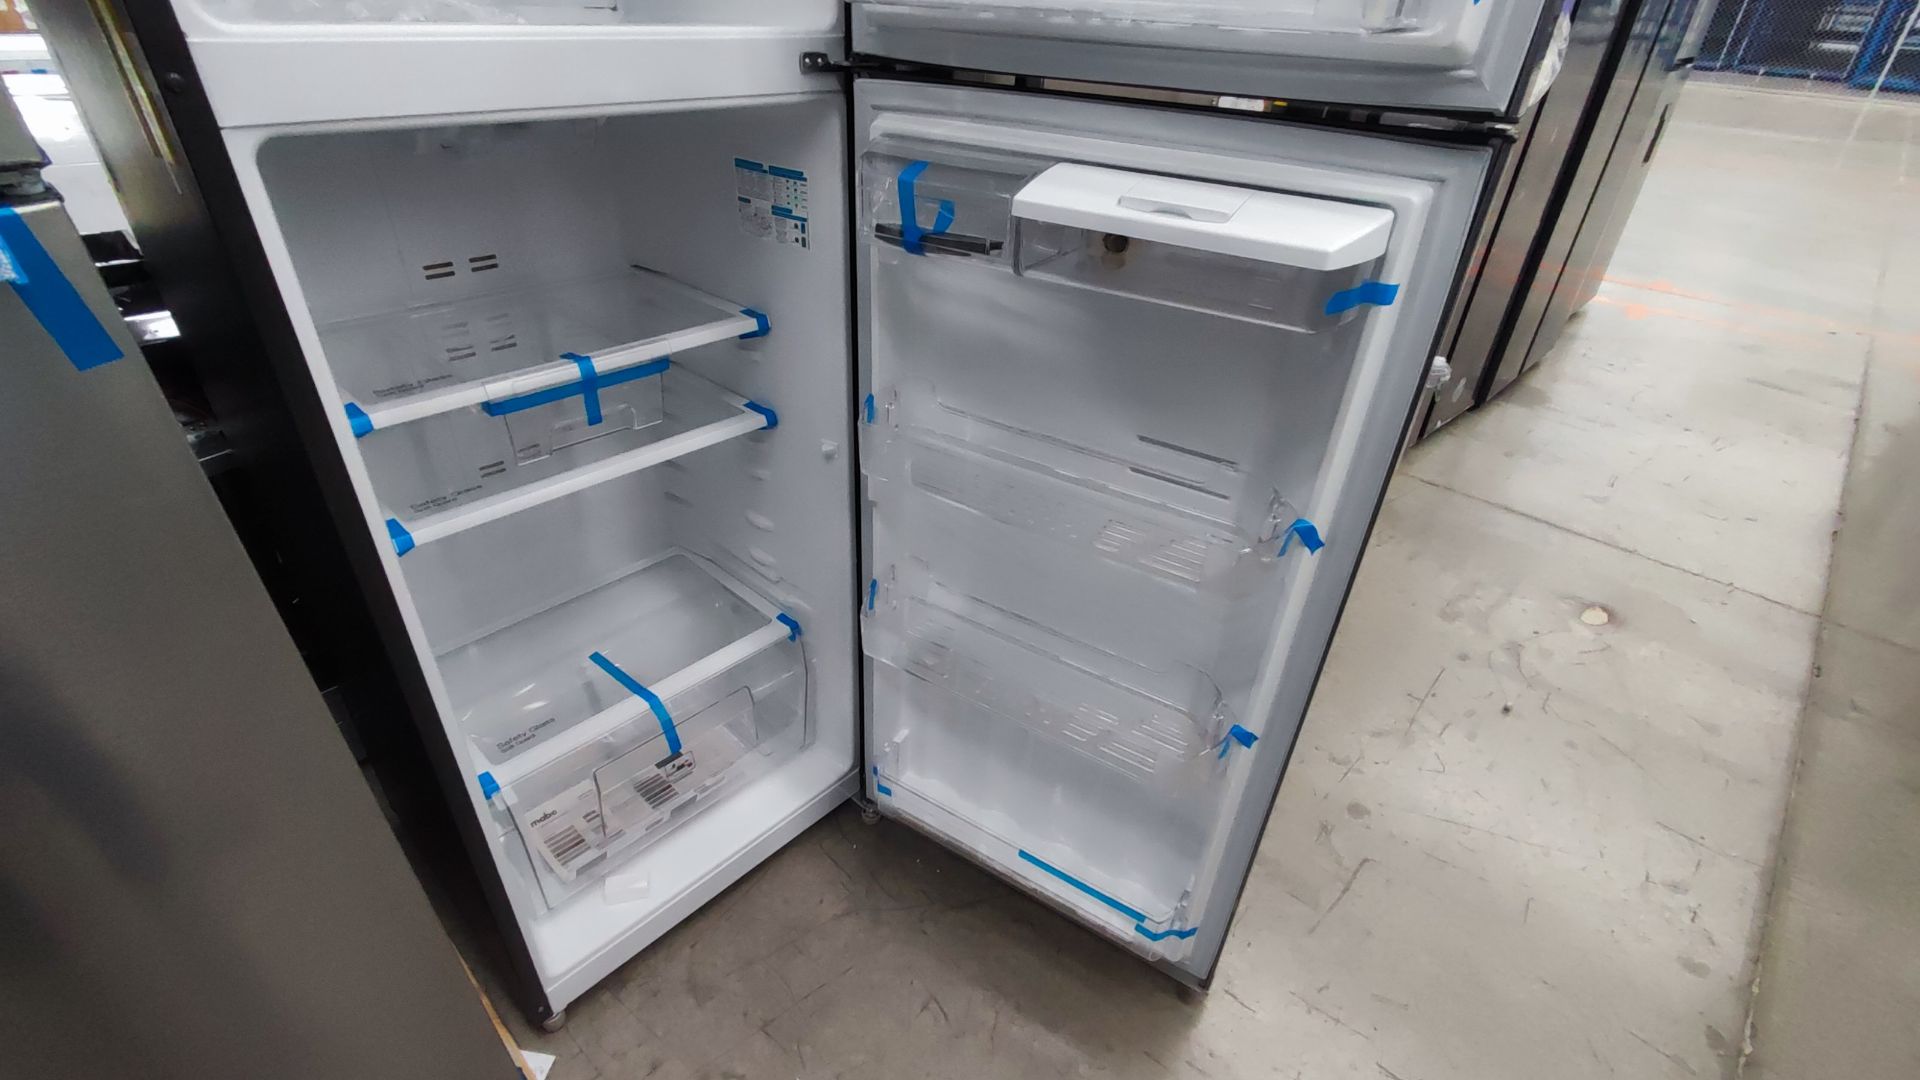 1 Refrigerador Marca Mabe, Modelo RMT400RY, Serie 2111B418085, Color Gris Detalles Estéticos. Favor - Image 10 of 12